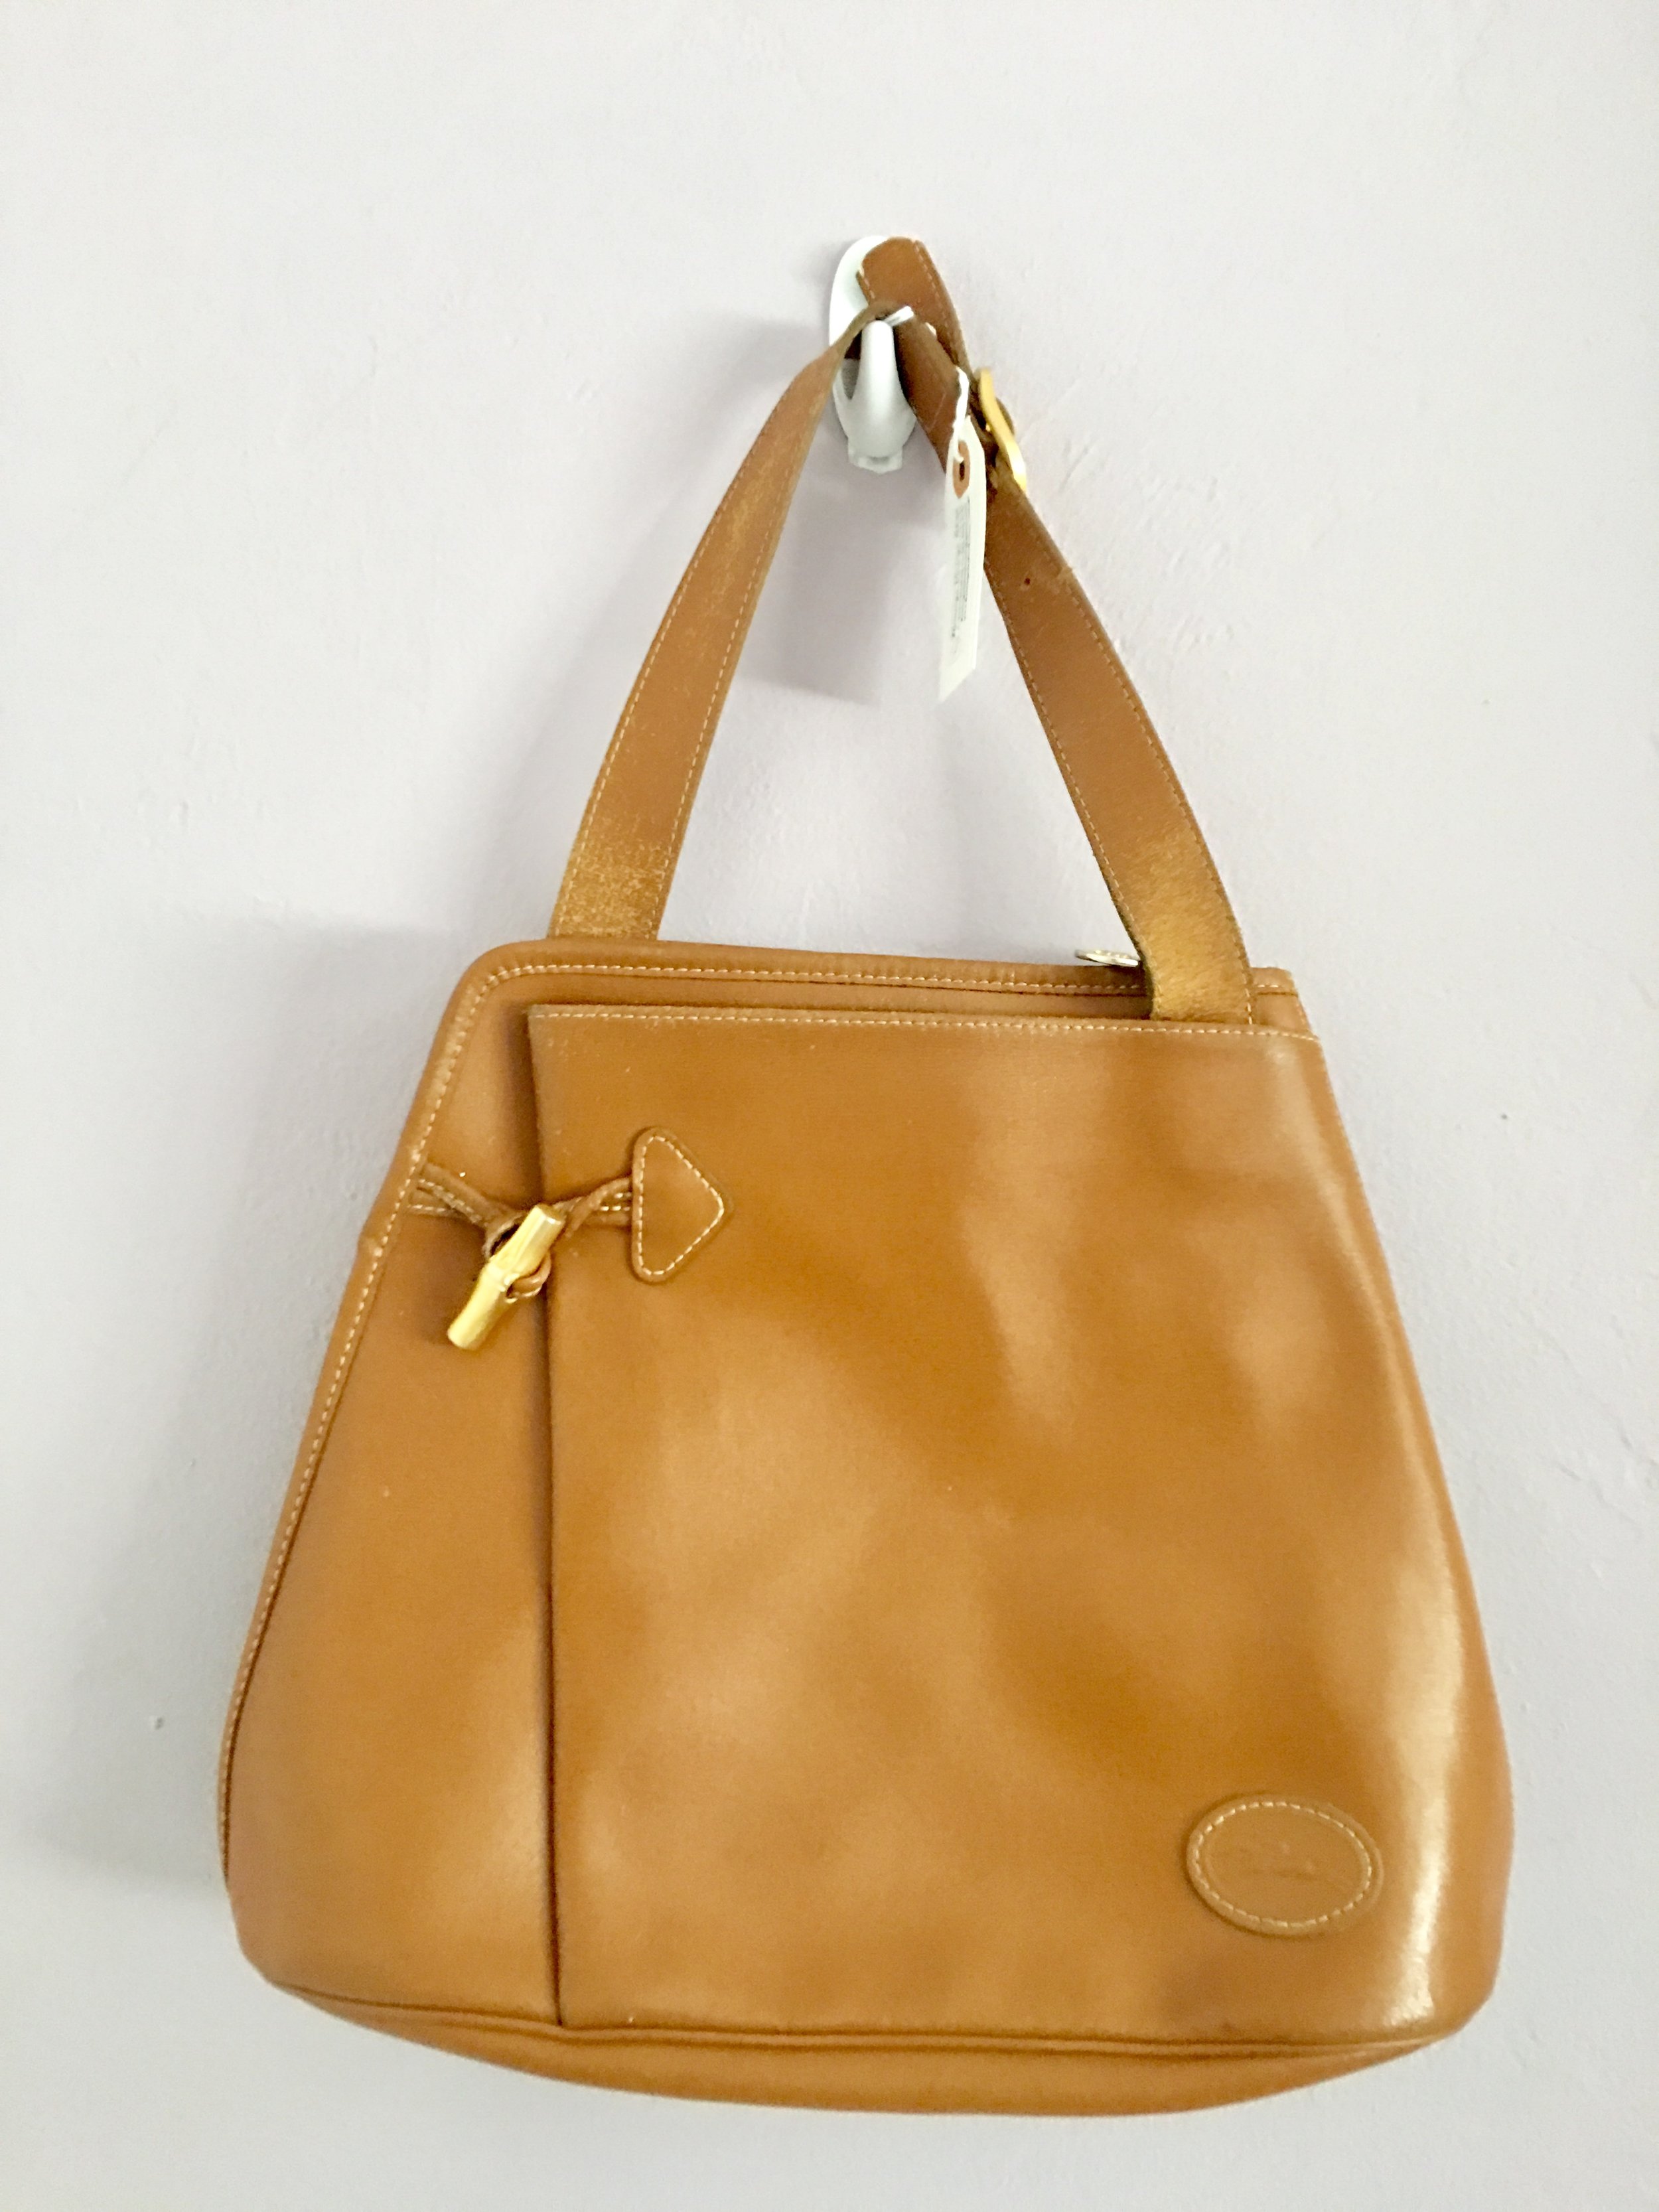 longchamp orange leather bag